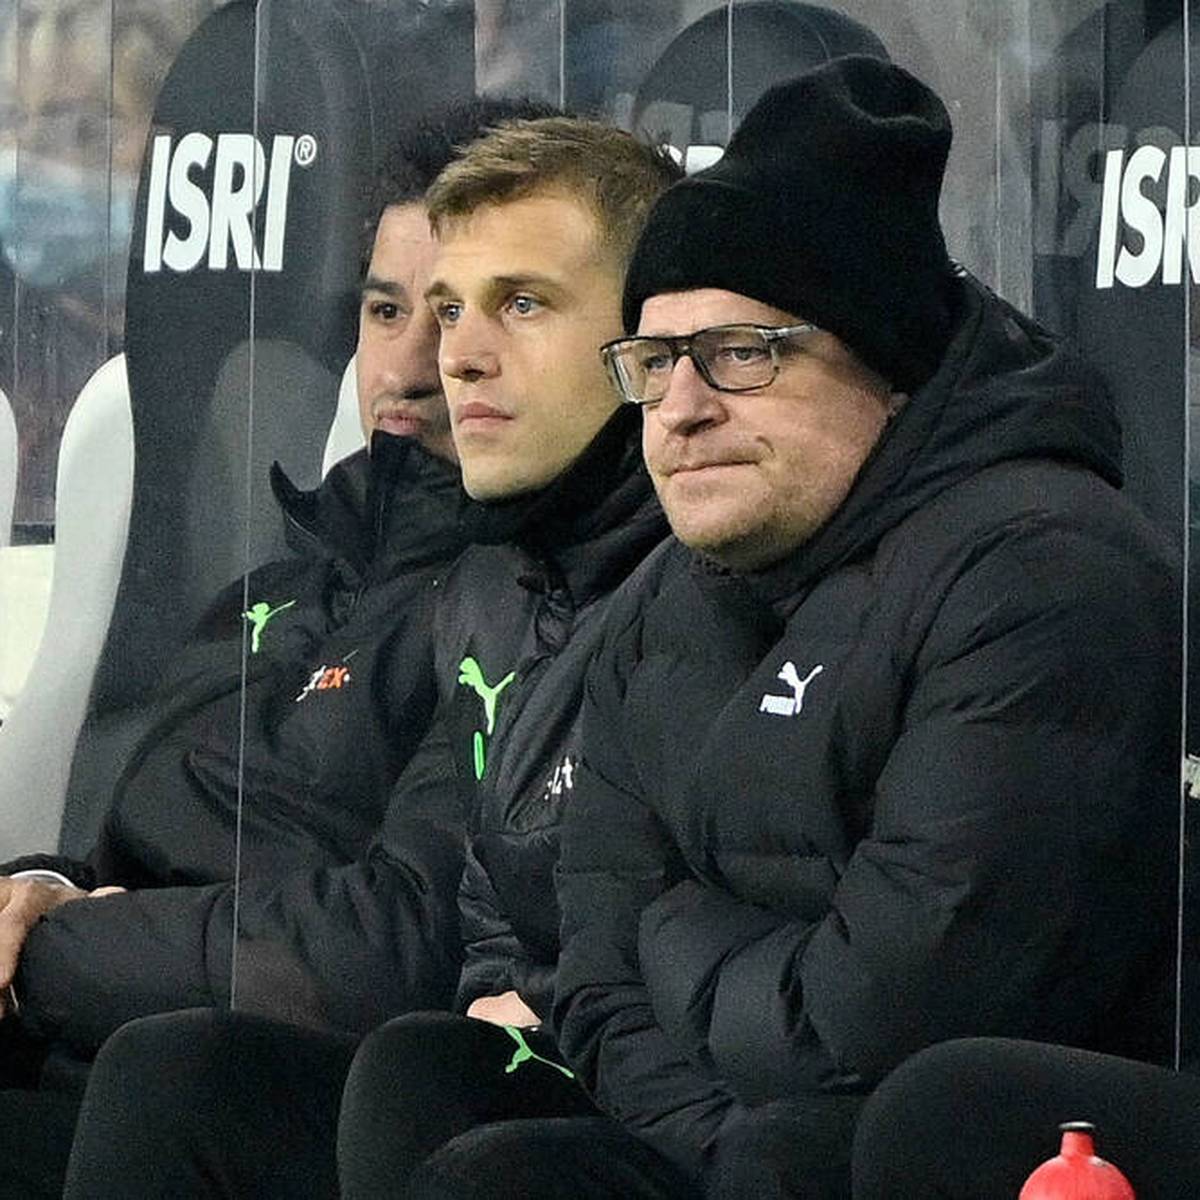 Bei Borussia Mönchengladbach deutet sich ein großer Knall an. Mit Sportdirektor Max Eberl könnte es zu einer schnellen Trennung kommen.